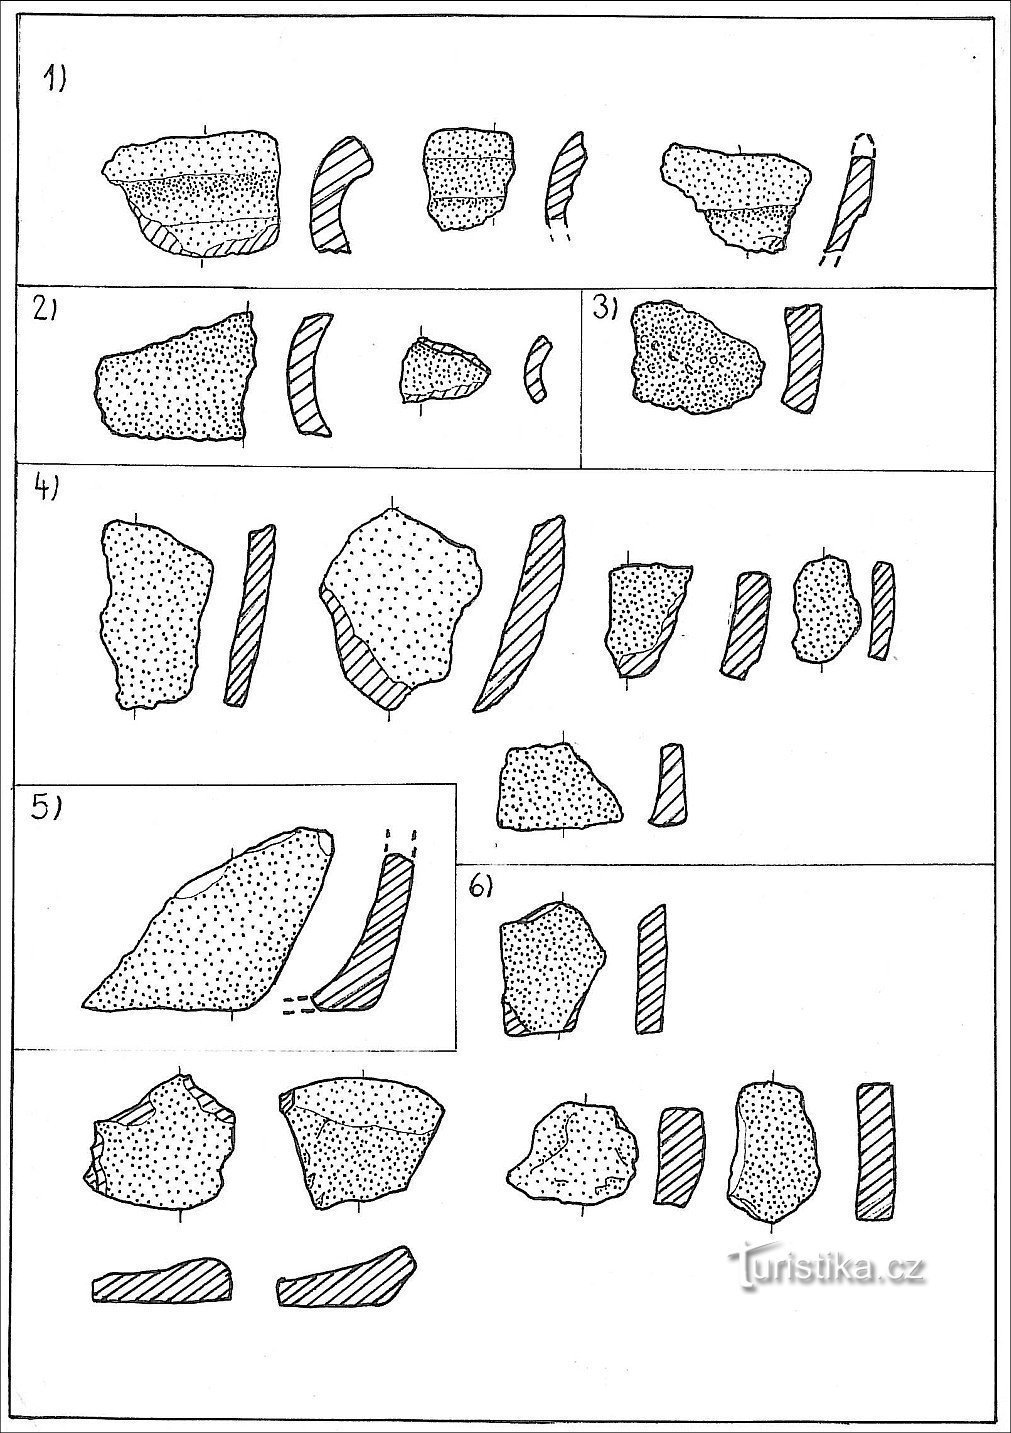 зразки городищної кераміки; 1) краї, 2) горловини, 3) плечі, 4) тіло, 5) основа, 6) низ